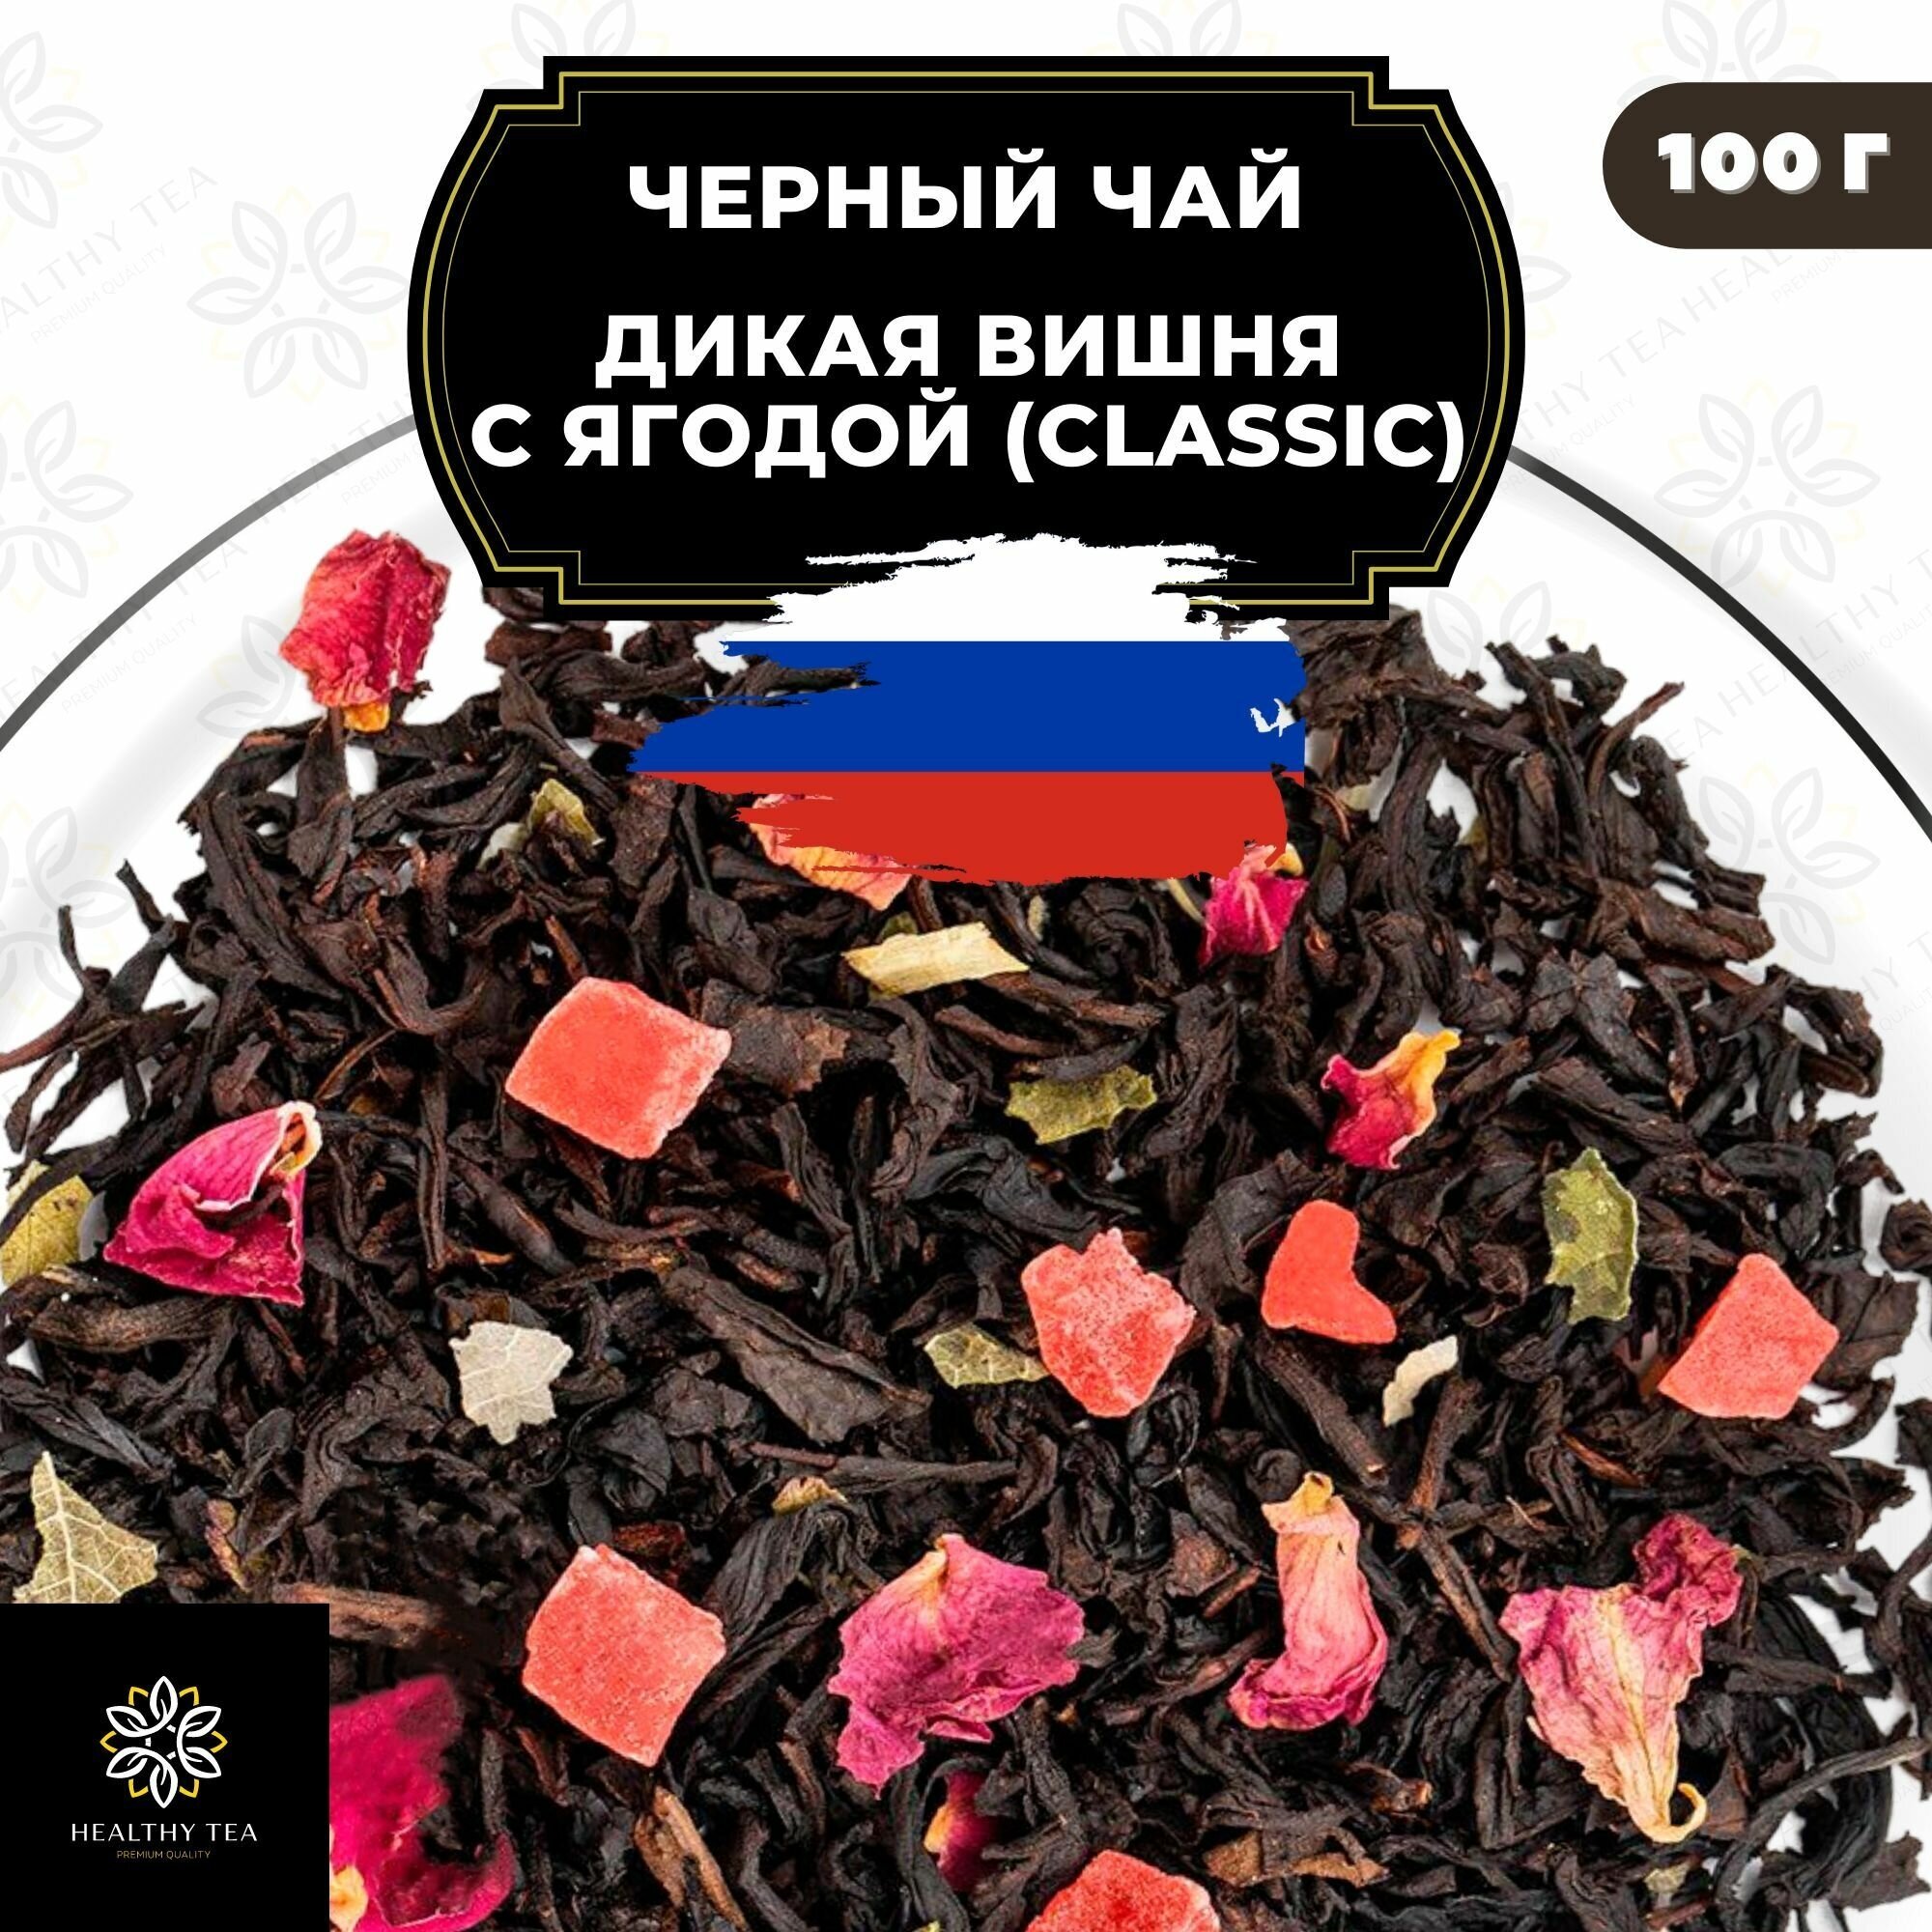 Индийский Черный чай с ананасом и розой "Дикая вишня с ягодой" (Classic) Полезный чай / HEALTHY TEA, 100 гр